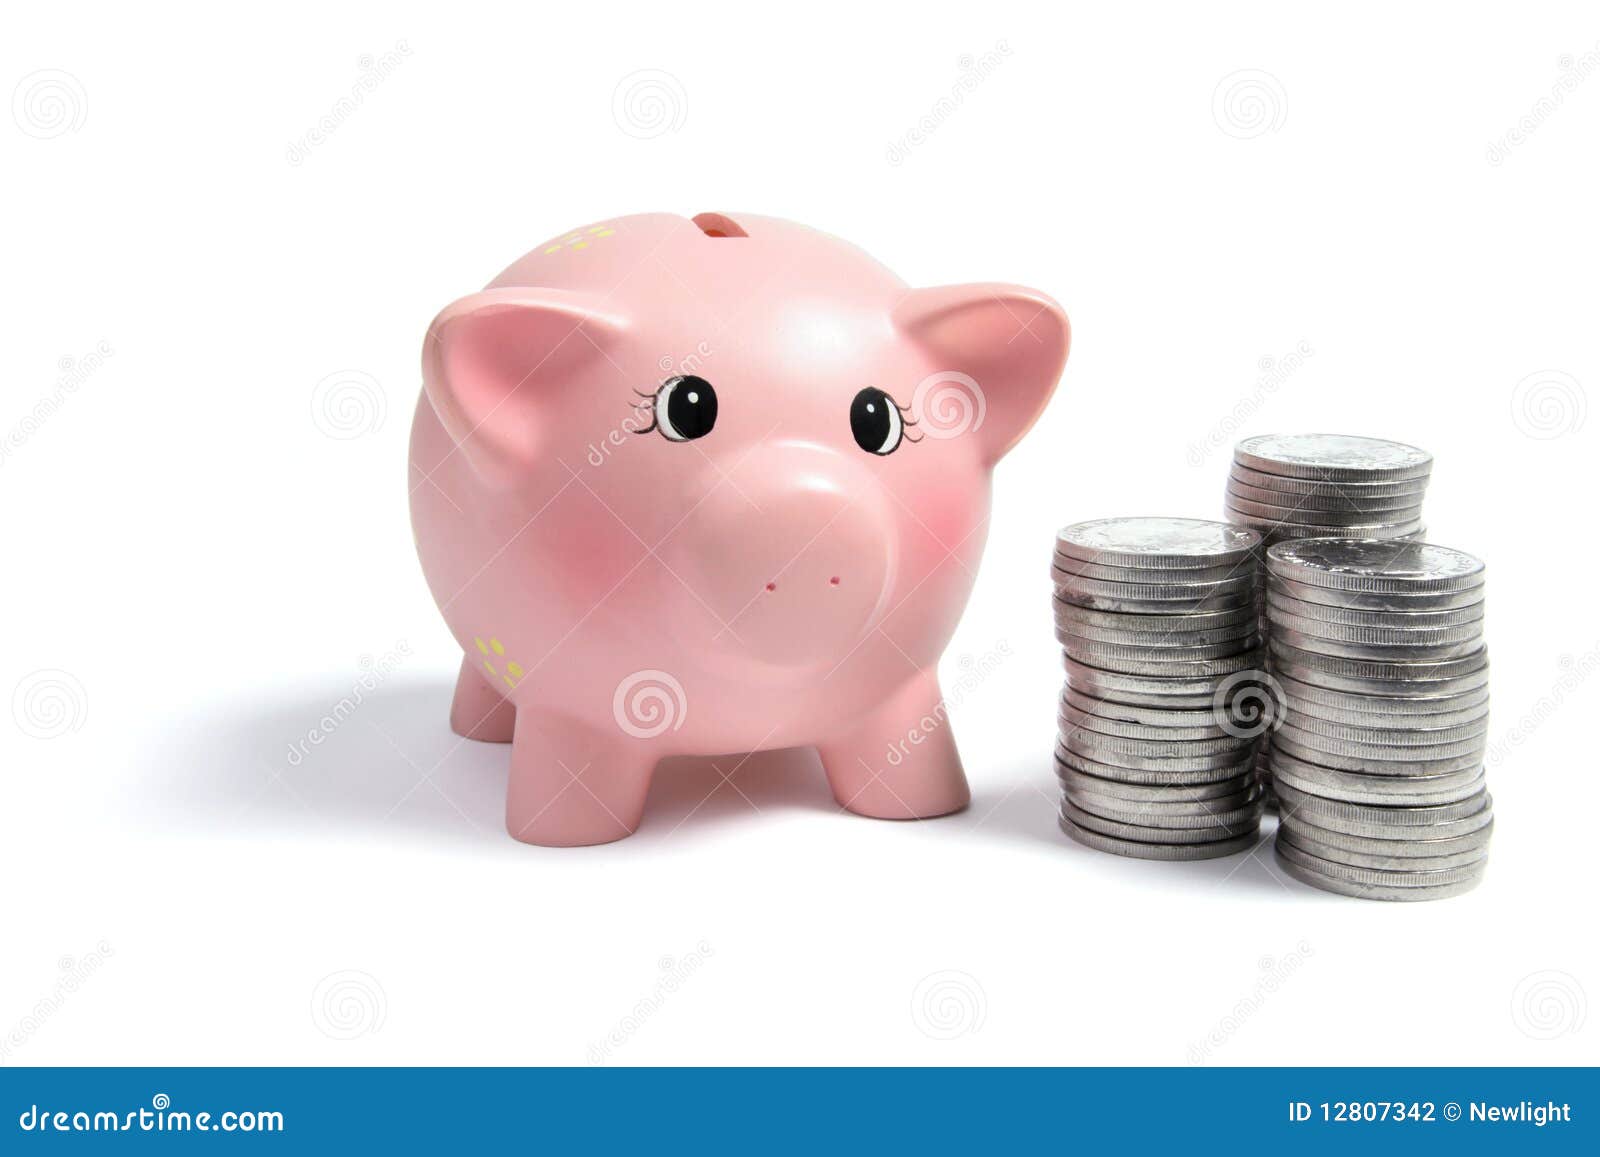 piggybank and coins